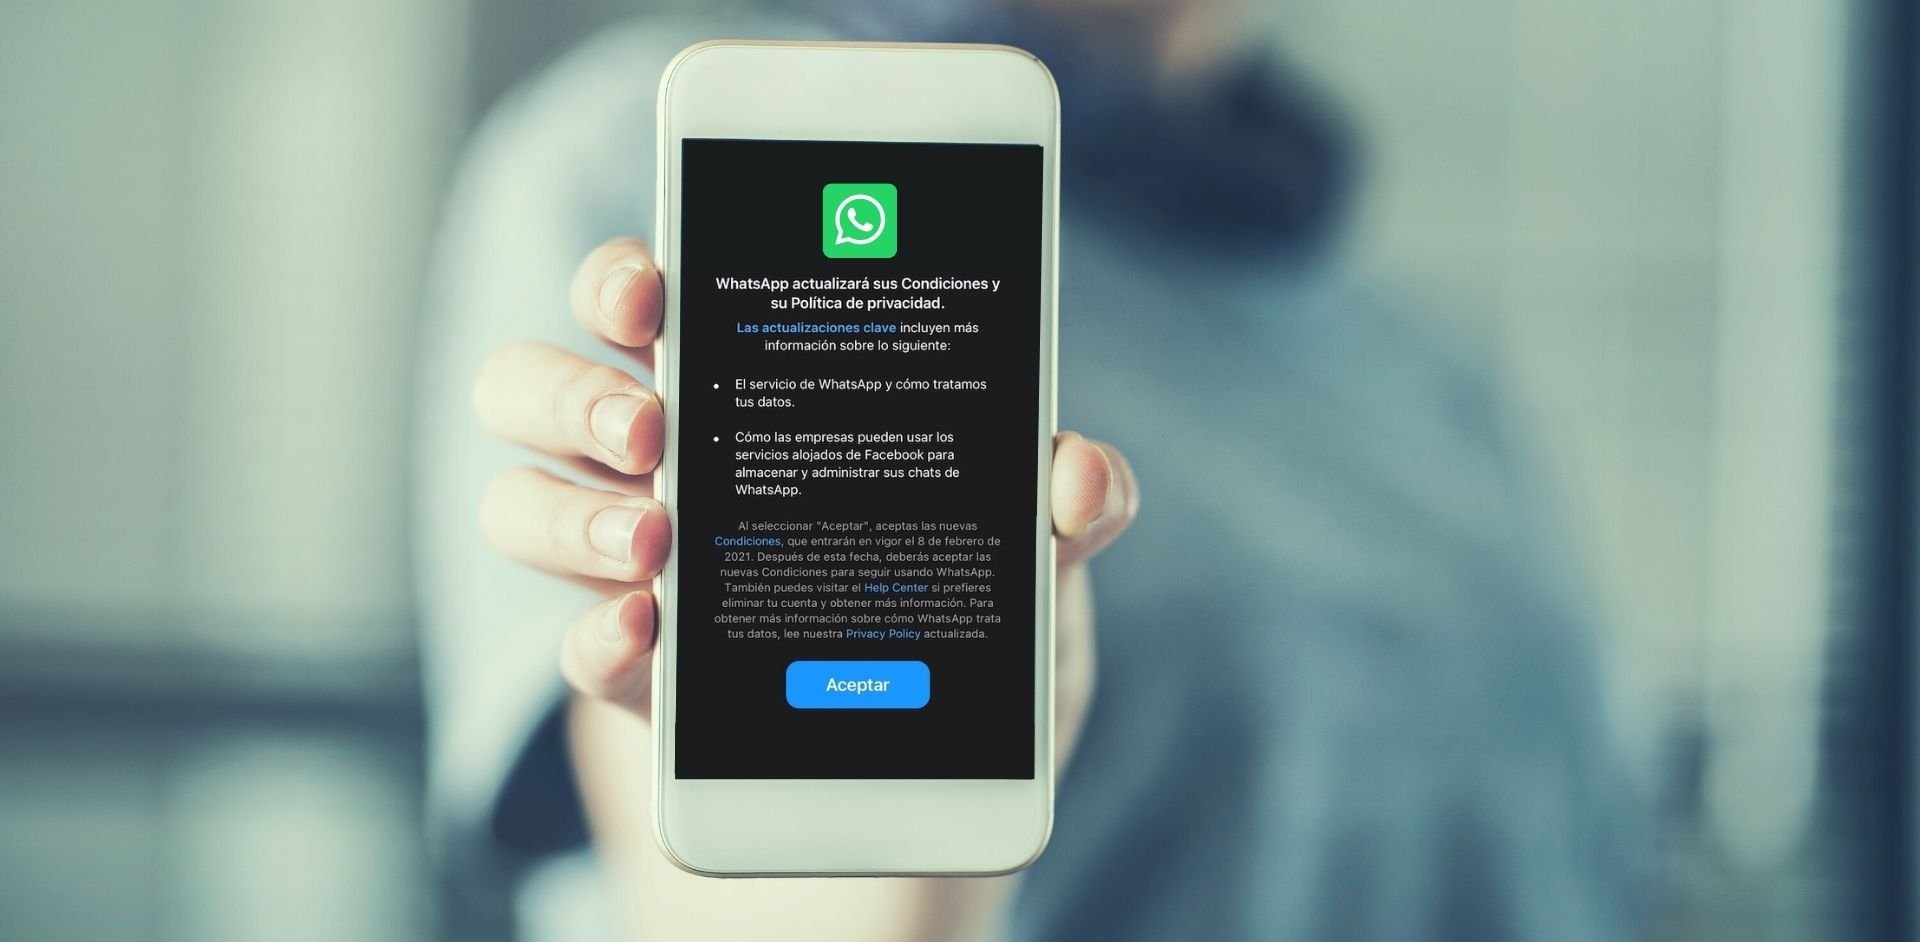 Nuevas políticas de privacidad para WhatsApp